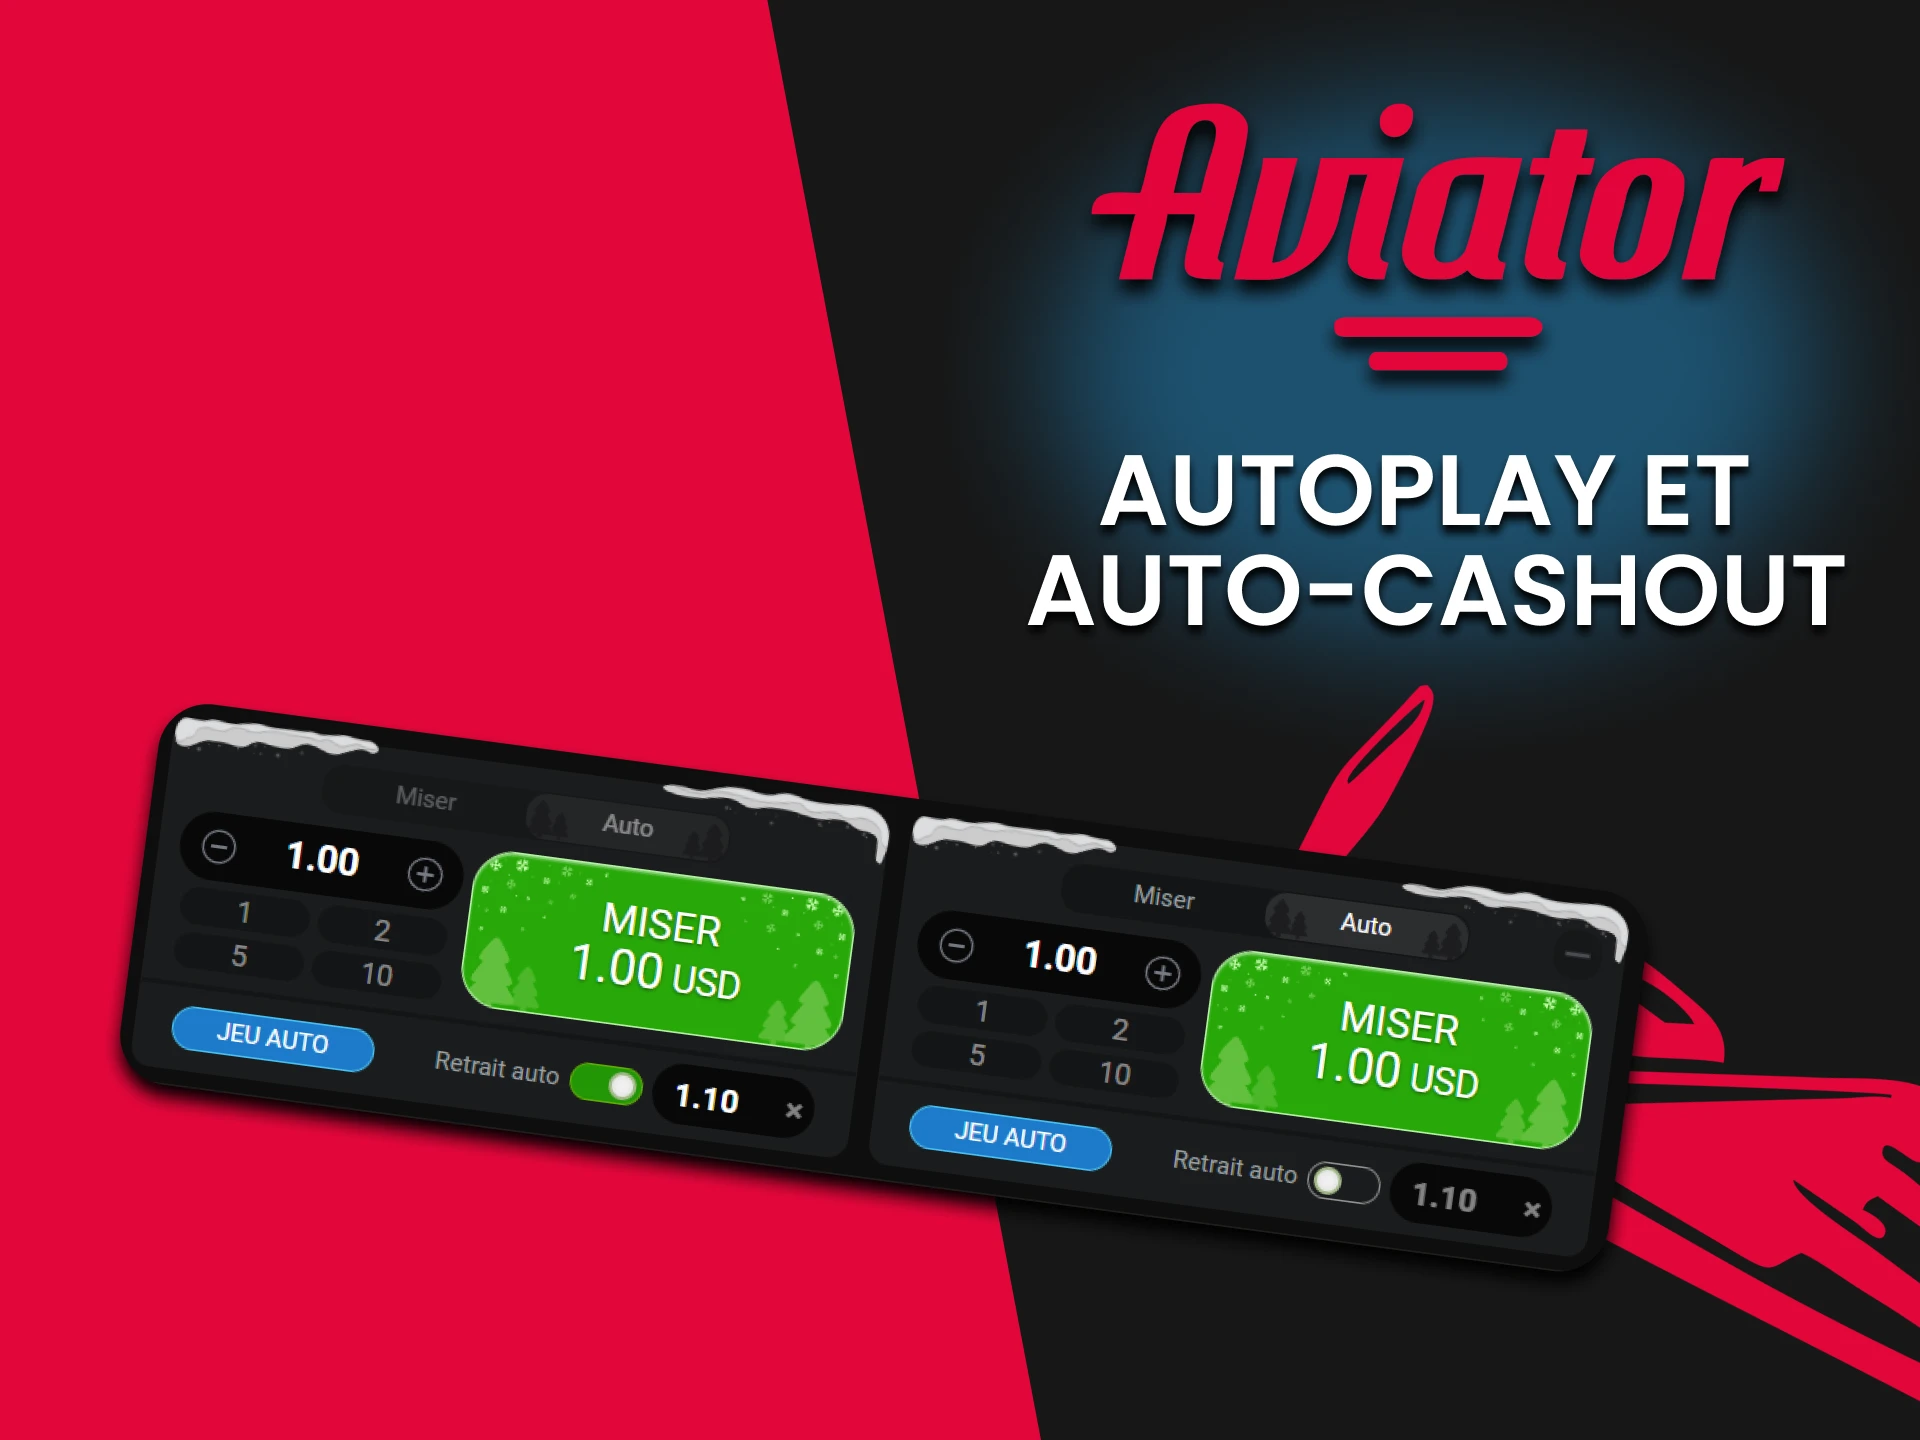 Utilisez la fonction d'enchère automatique dans Aviator.